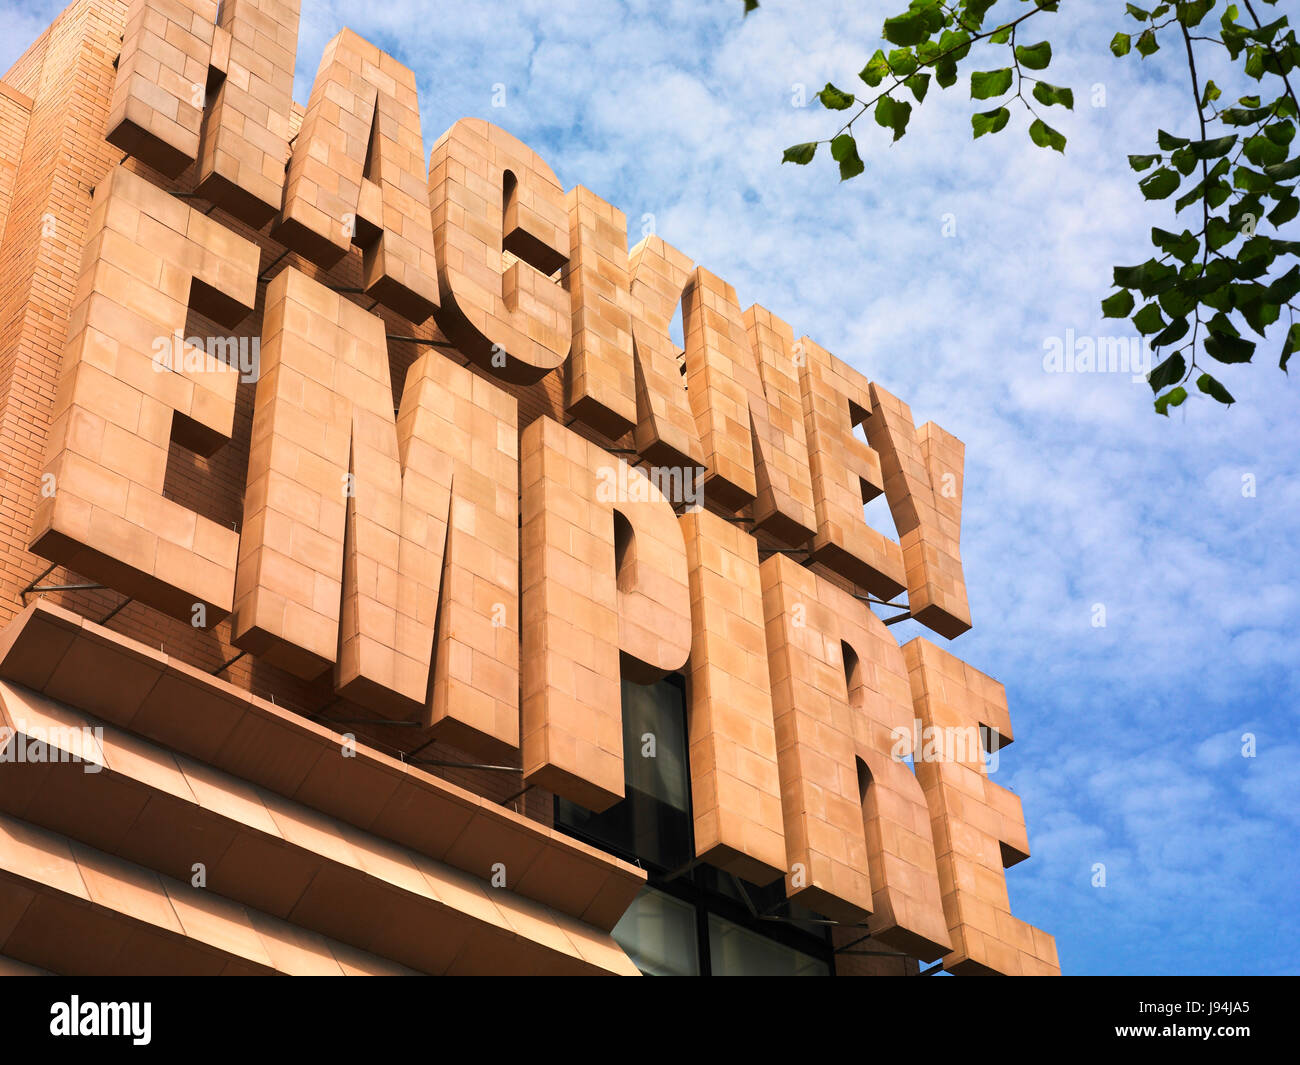 Hackney Empire sign Stock Photo